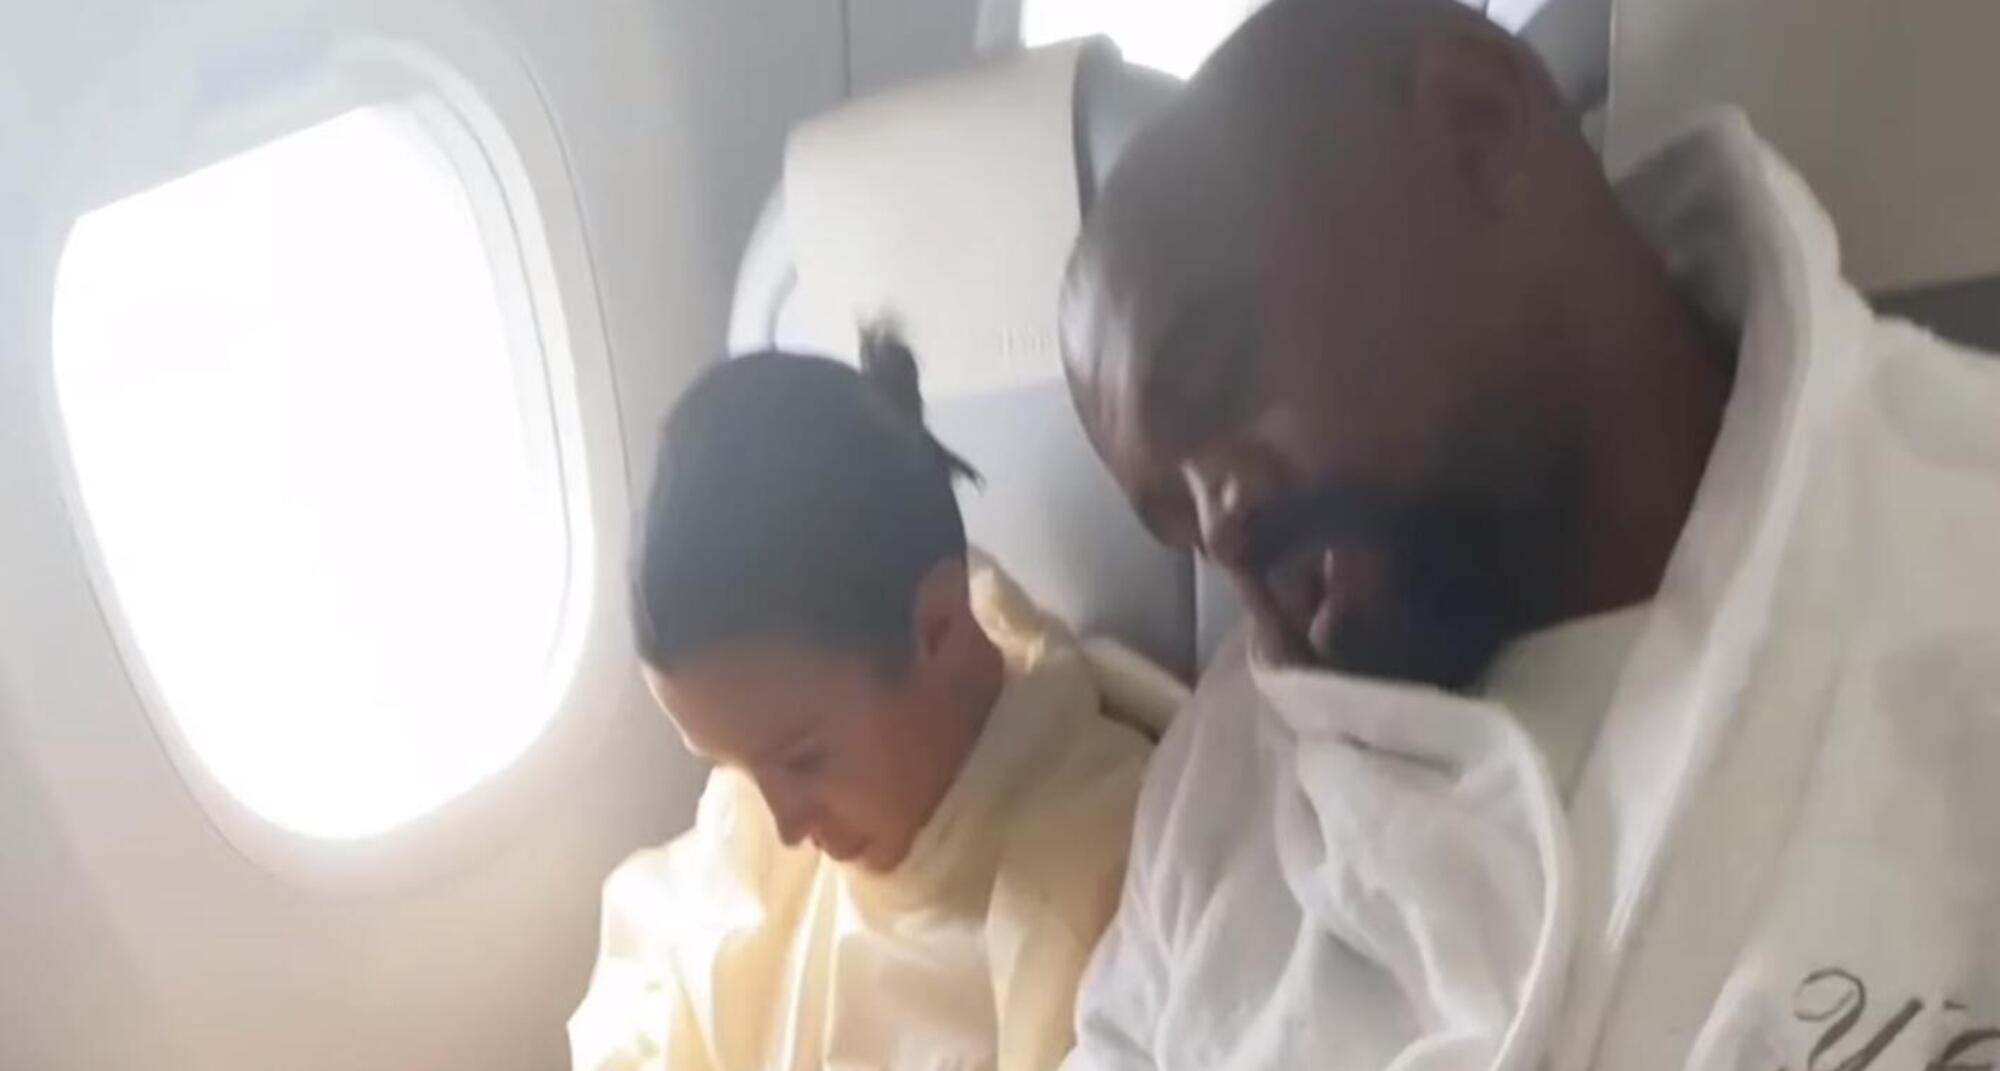 Bianca Censori (col telefono) e Kanye West (appisolato) sul volo in economy